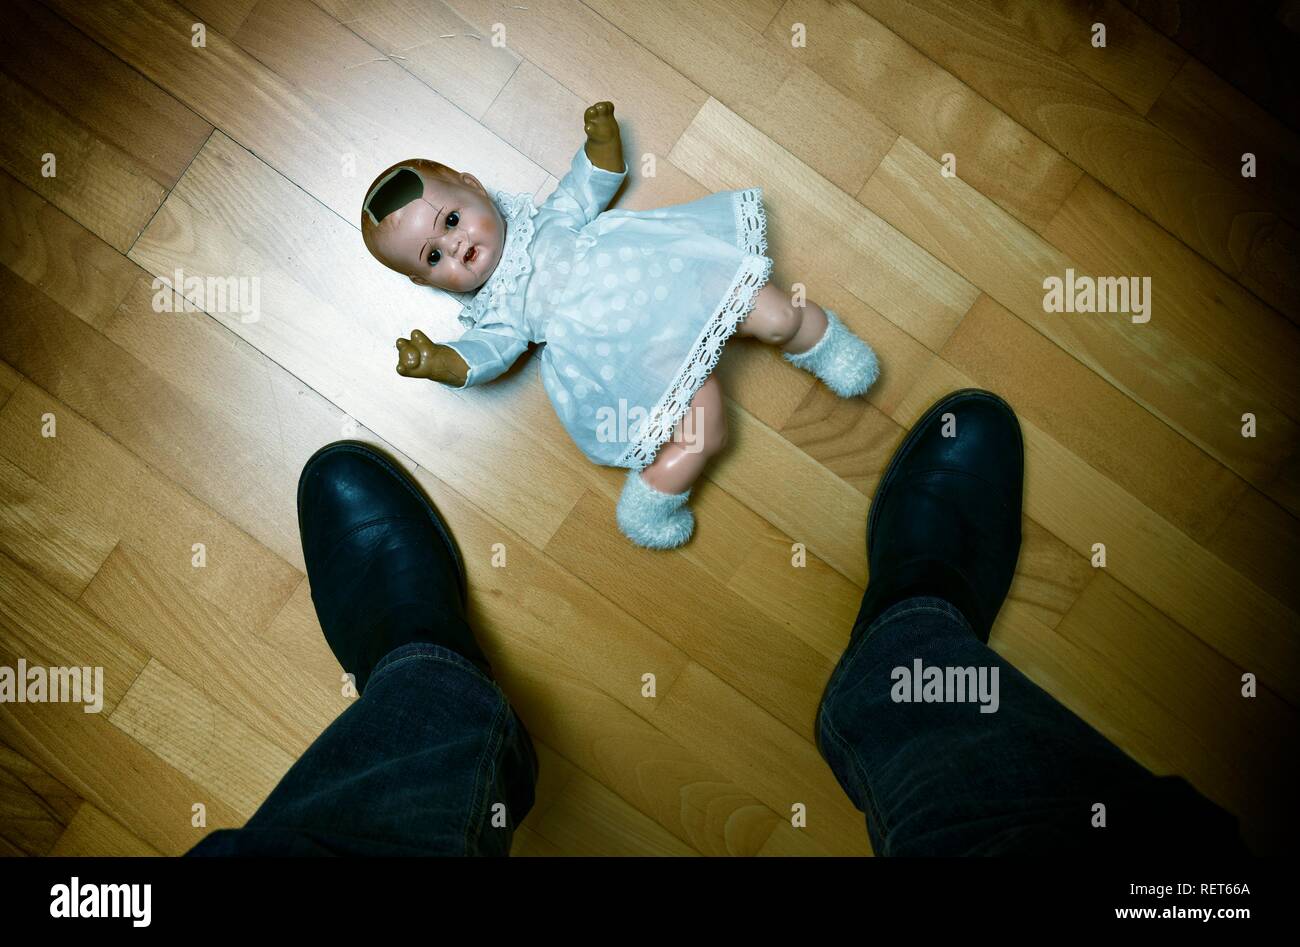 Symbol Bild Kindesmissbrauch, Puppe, beschädigt, auf dem Boden liegend, Mann, Baden-Württemberg, Deutschland Stockfoto